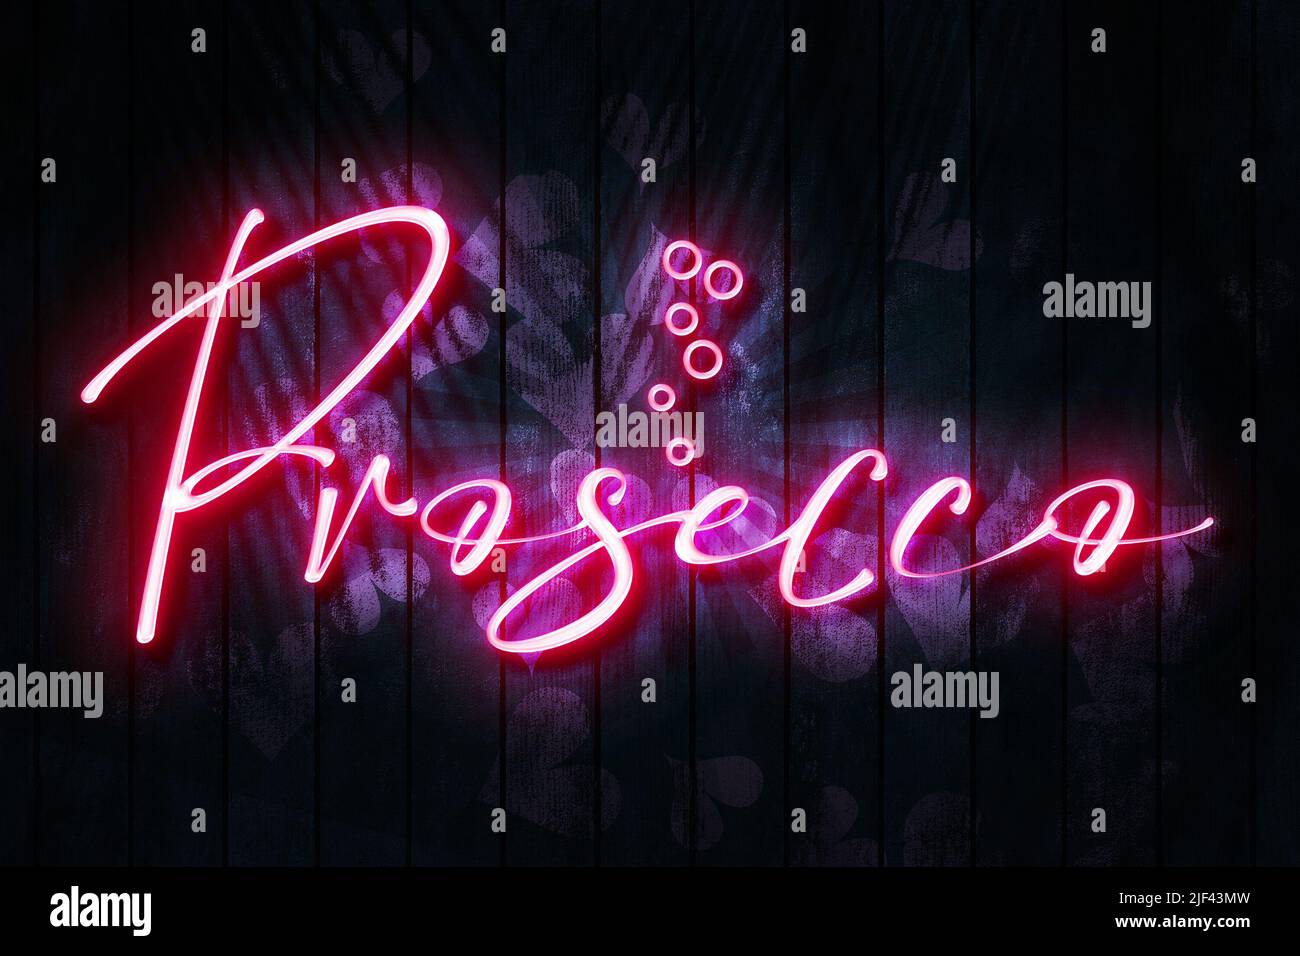 Prosecco signo de neón rosa en una pared de madera oscura con corazones rosa ilustración 3D. Foto de stock